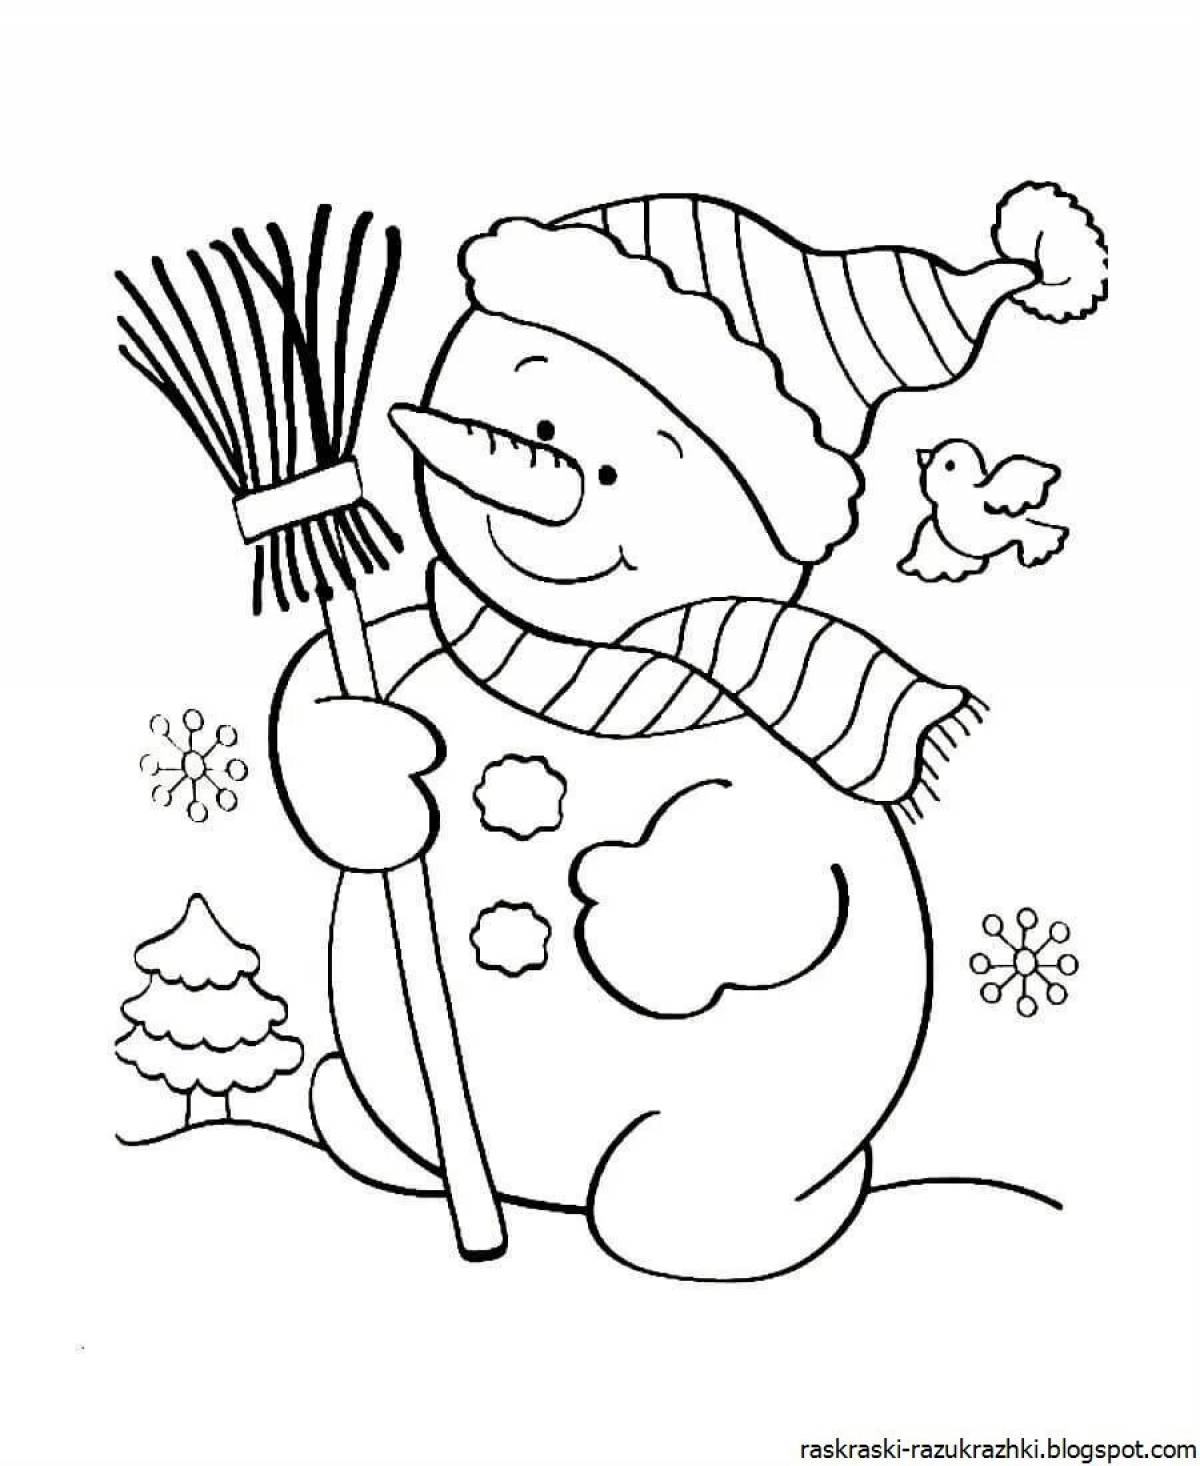 Детская раскраска снеговика с фестонами